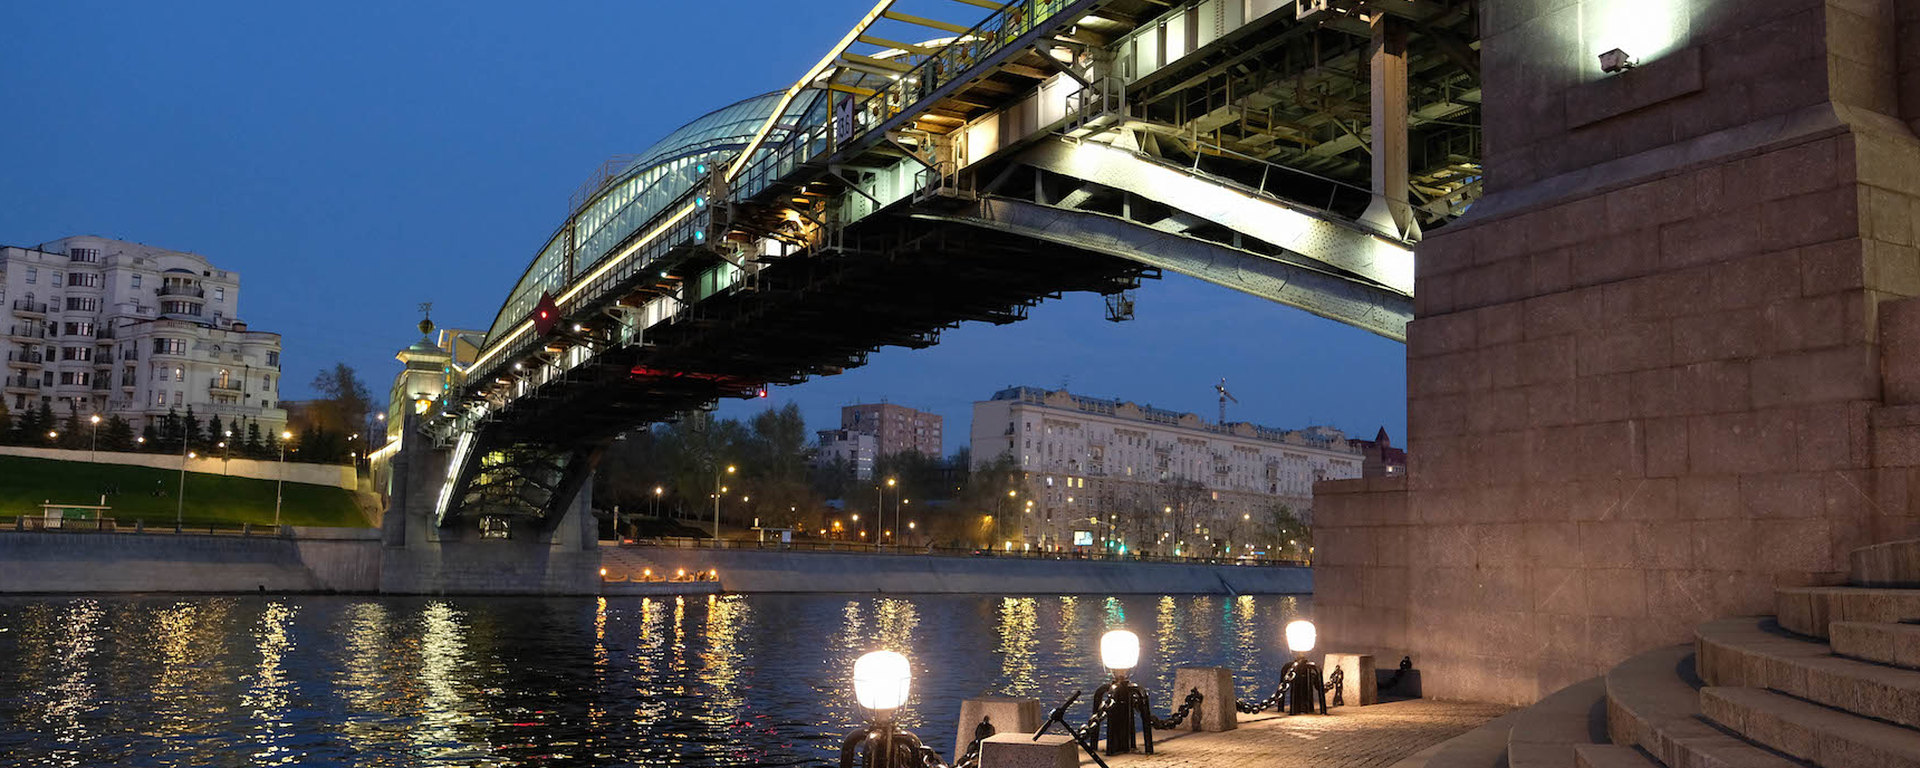 Искусство передвижения мостов: опыт Москвы архитектура,мосты,технологии